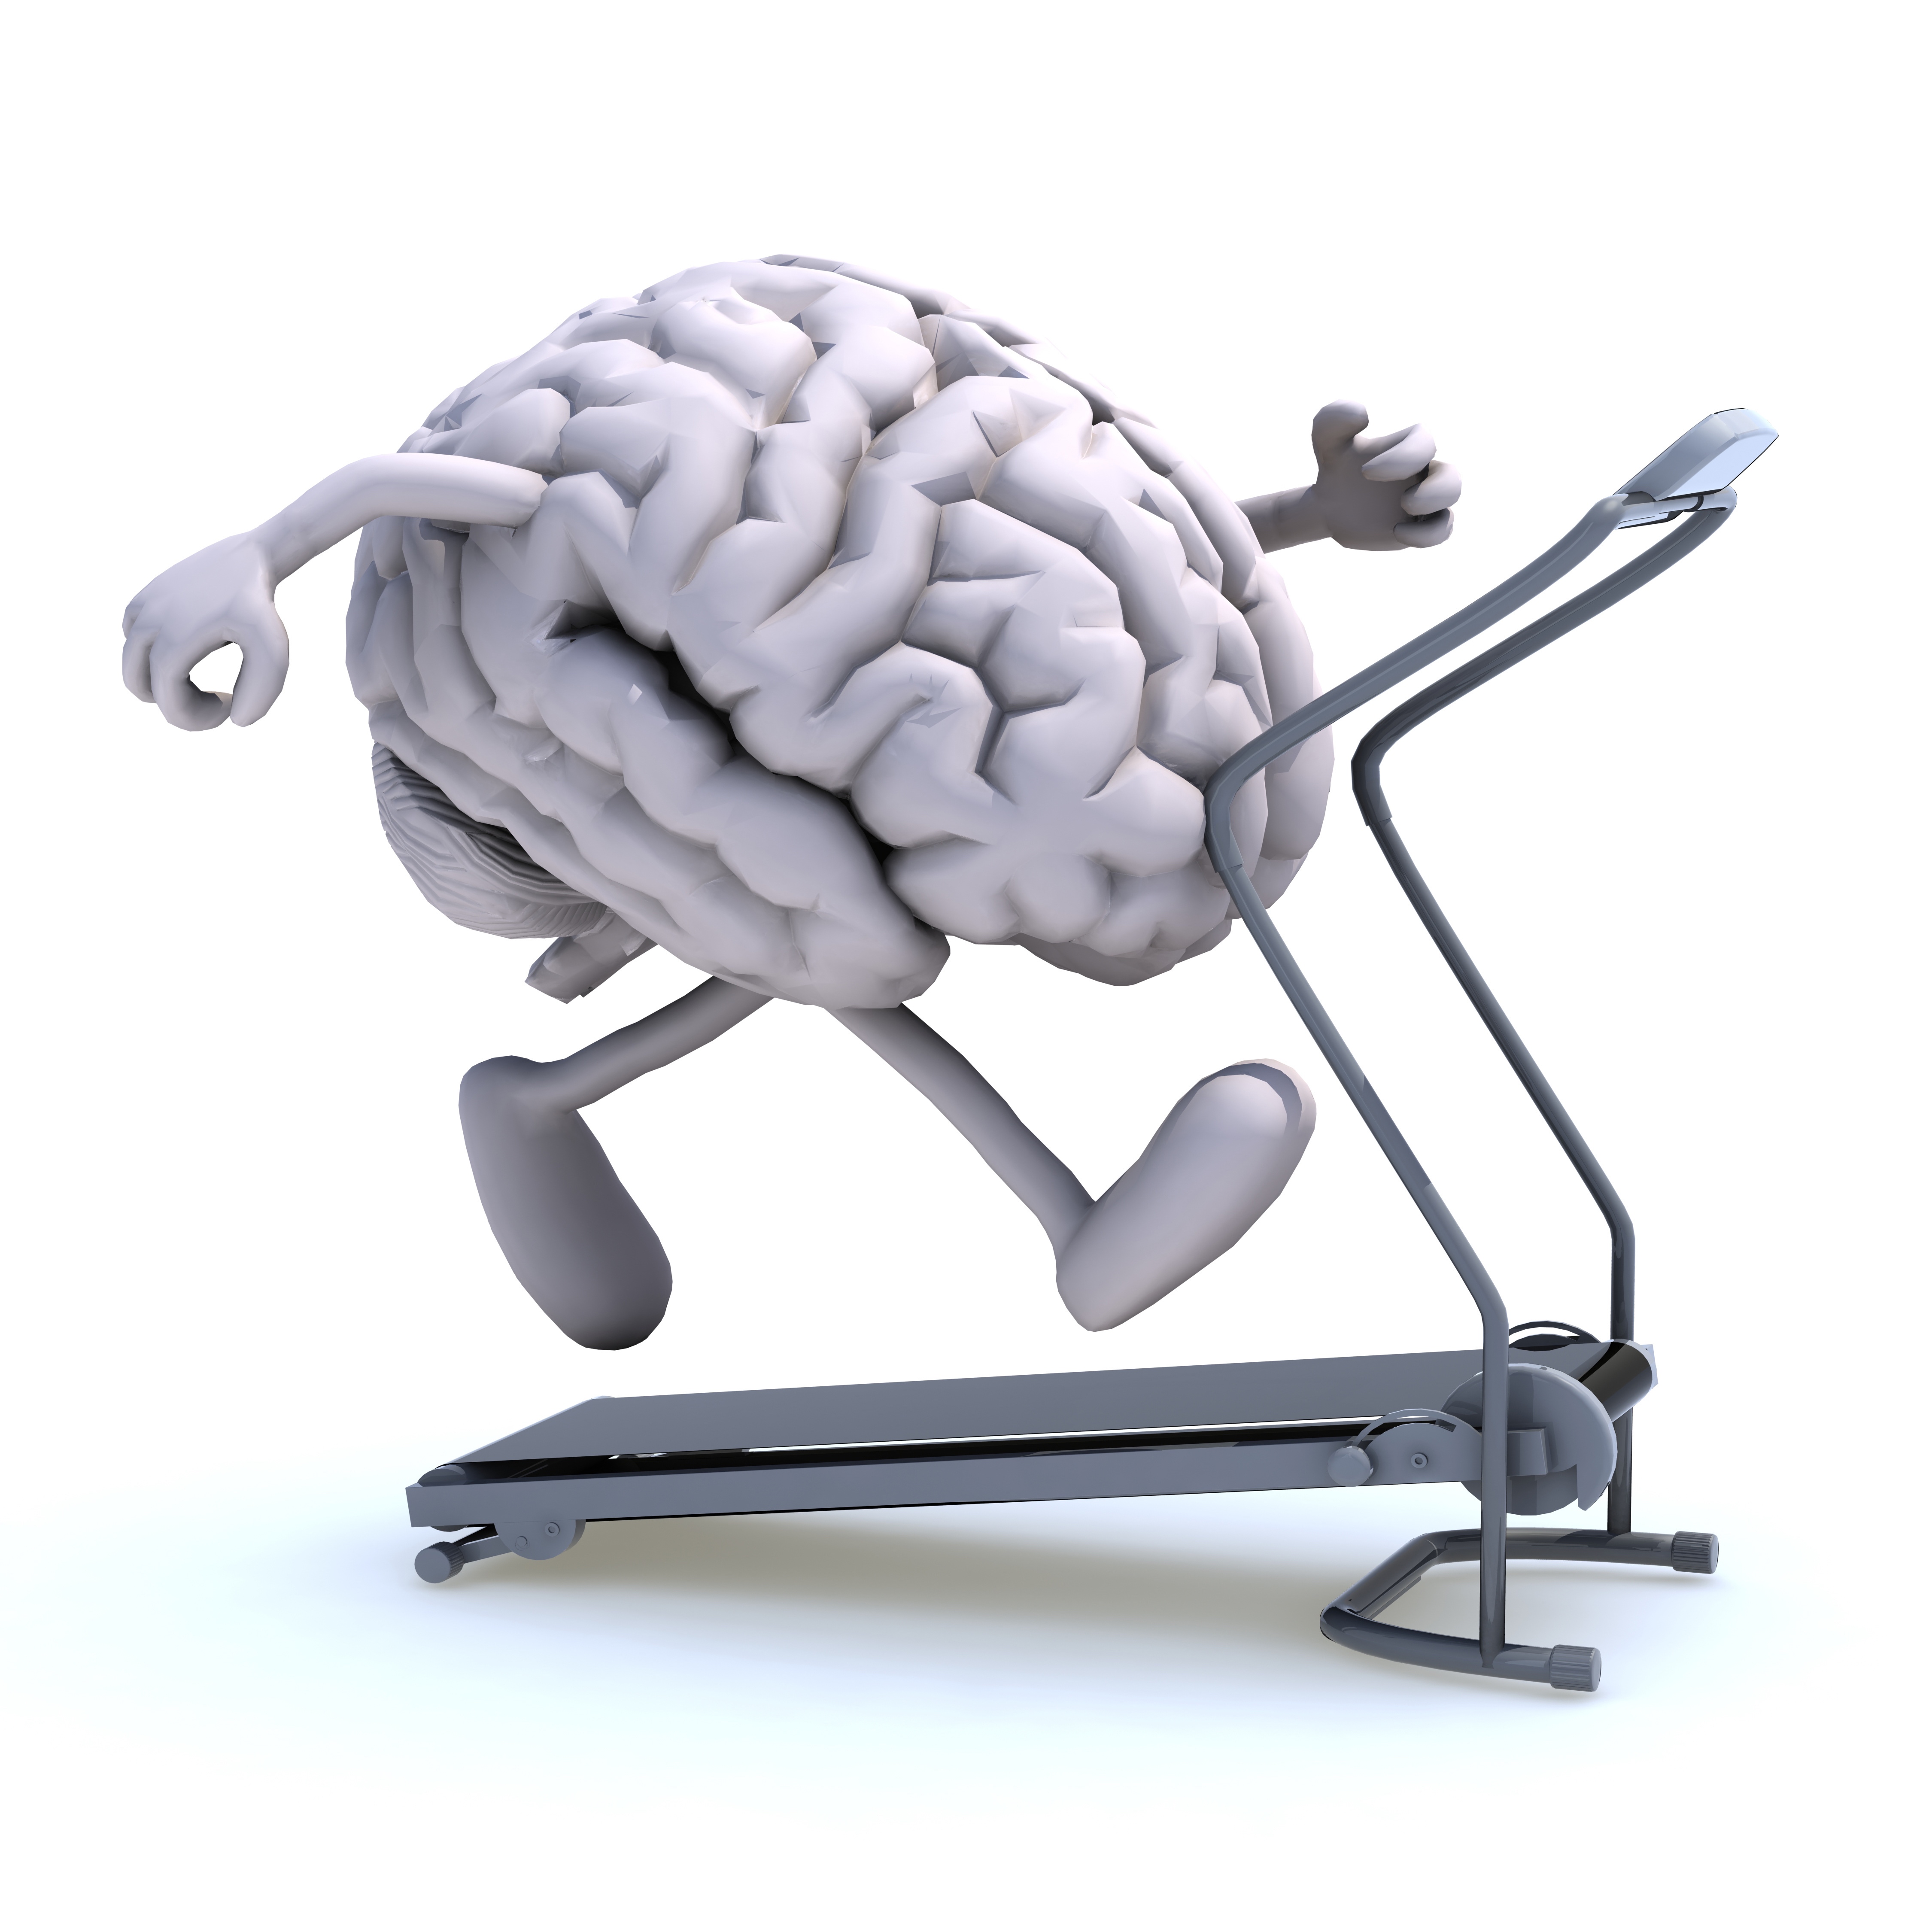 Повышенная умственная активность. Тренировка мозга. Работоспособность мозга. Усталый мозг.